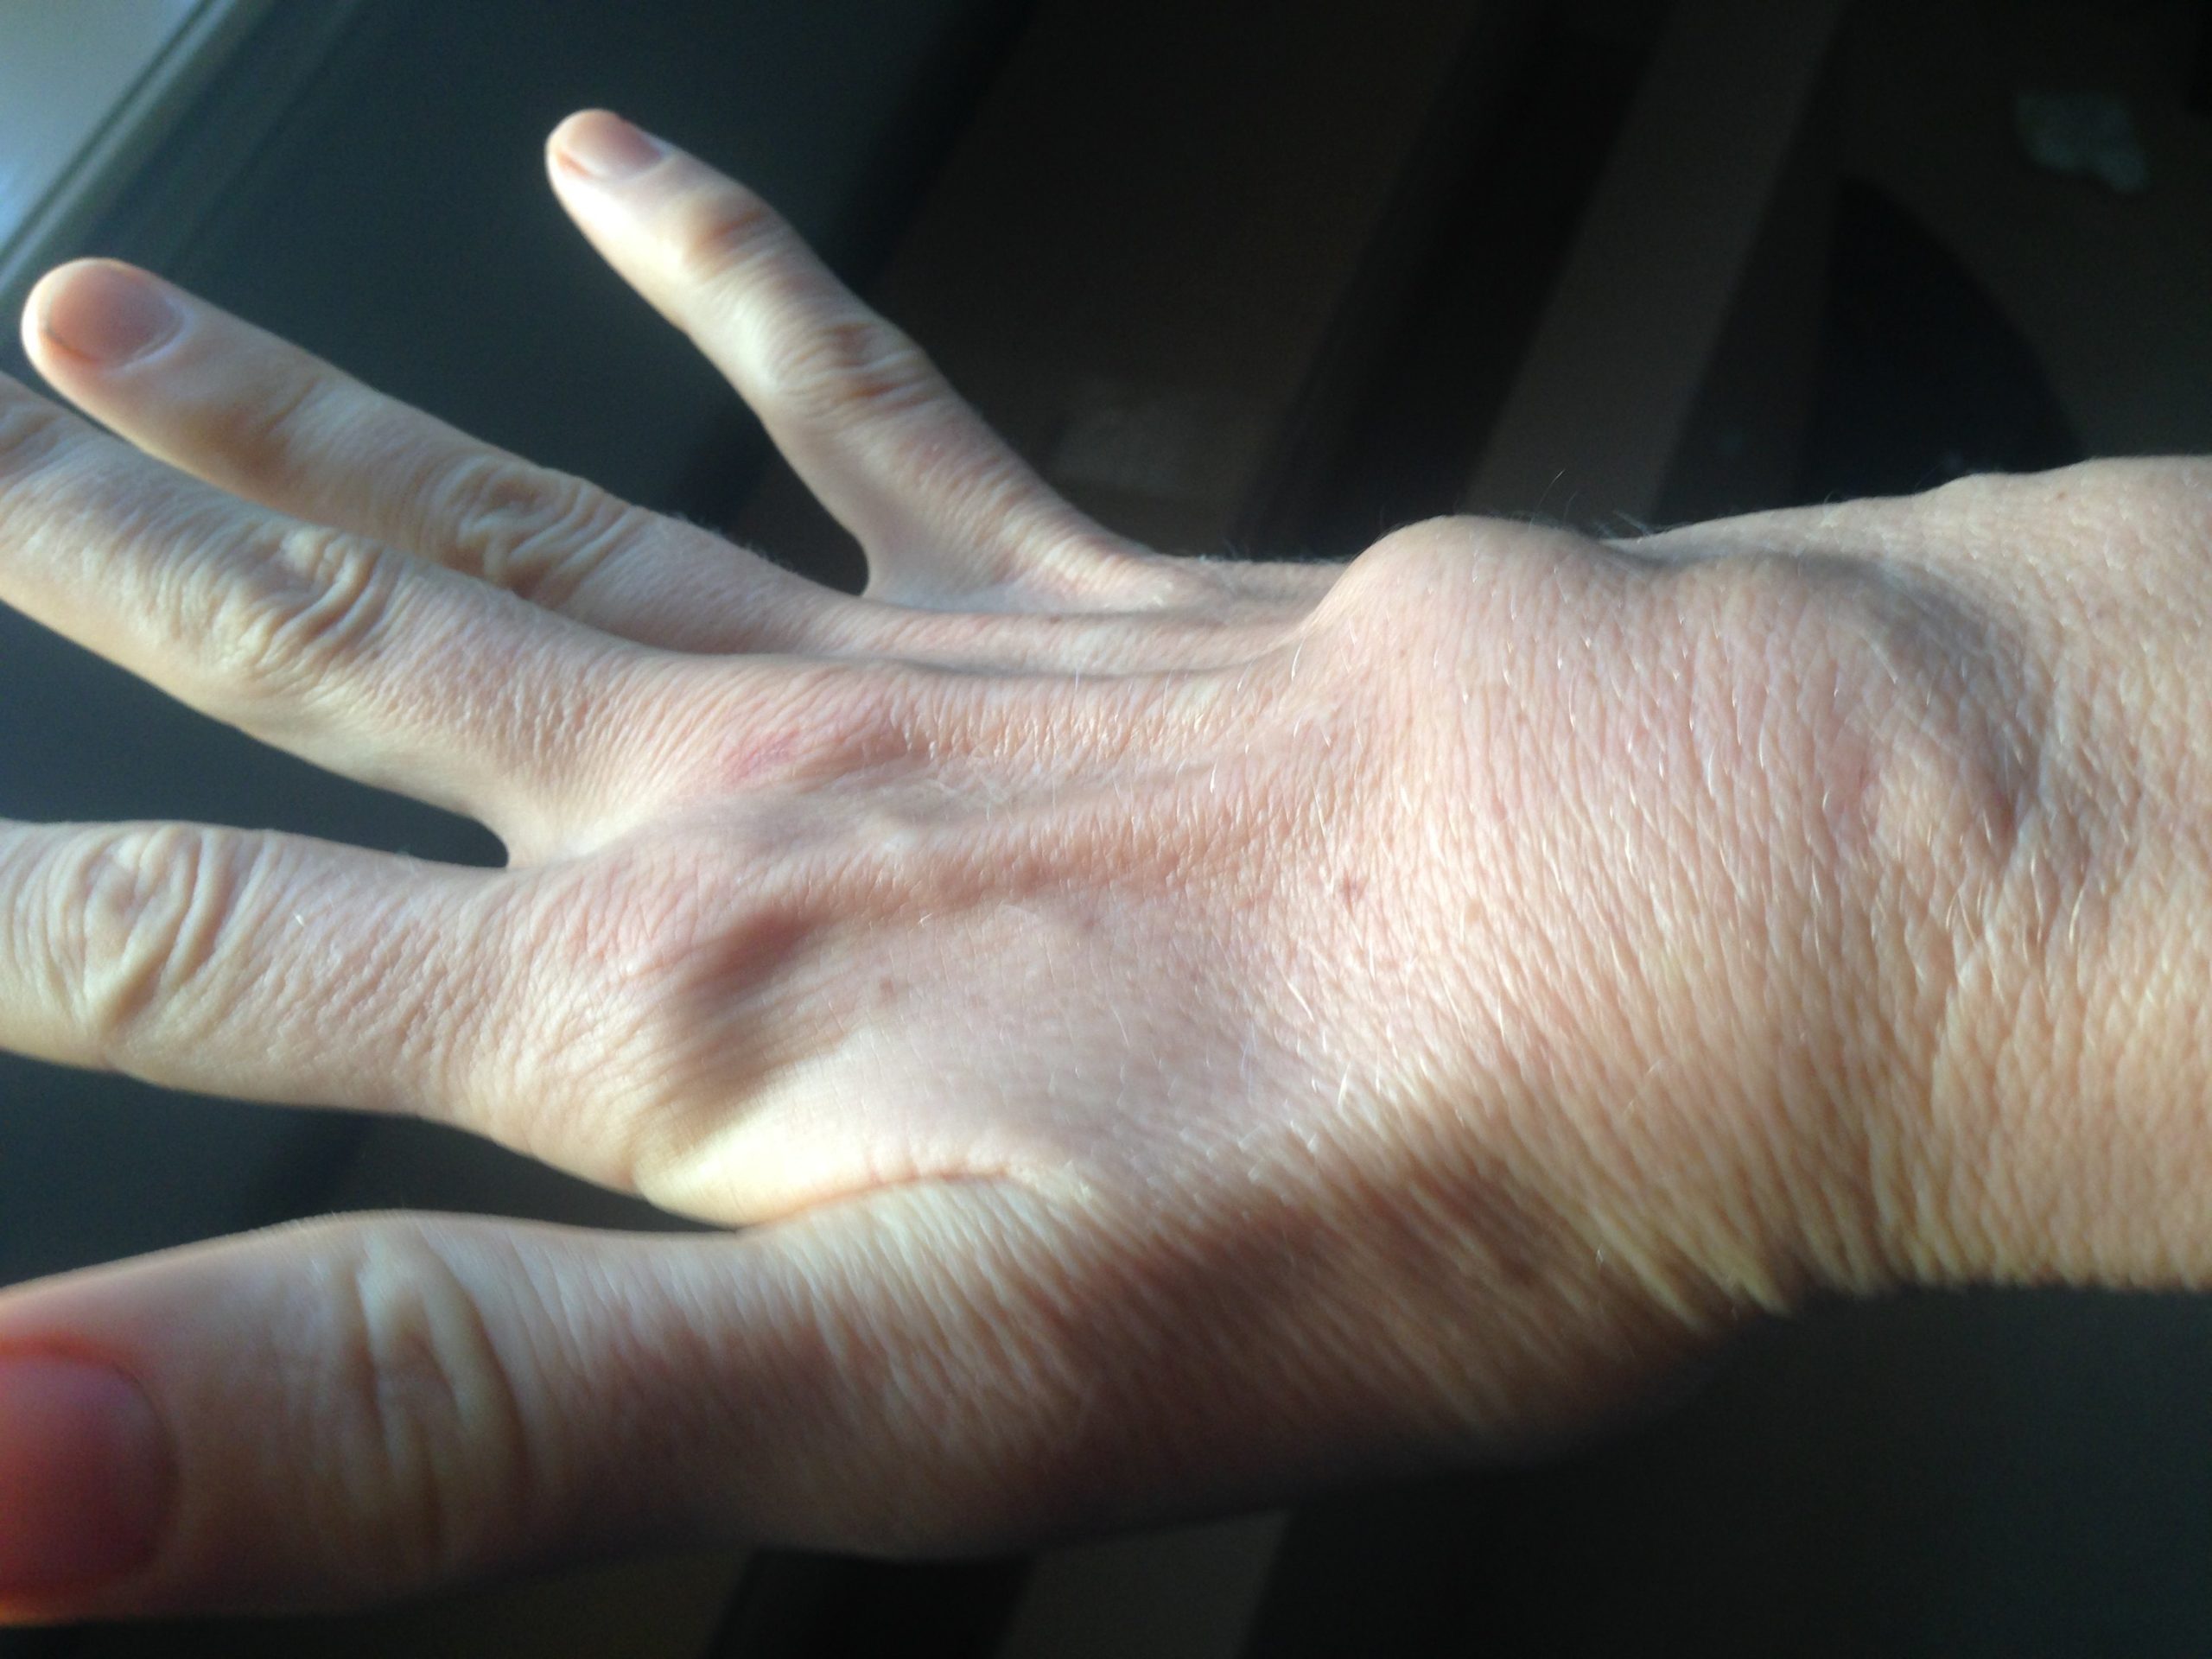 Rheumatoid arthritis wrist